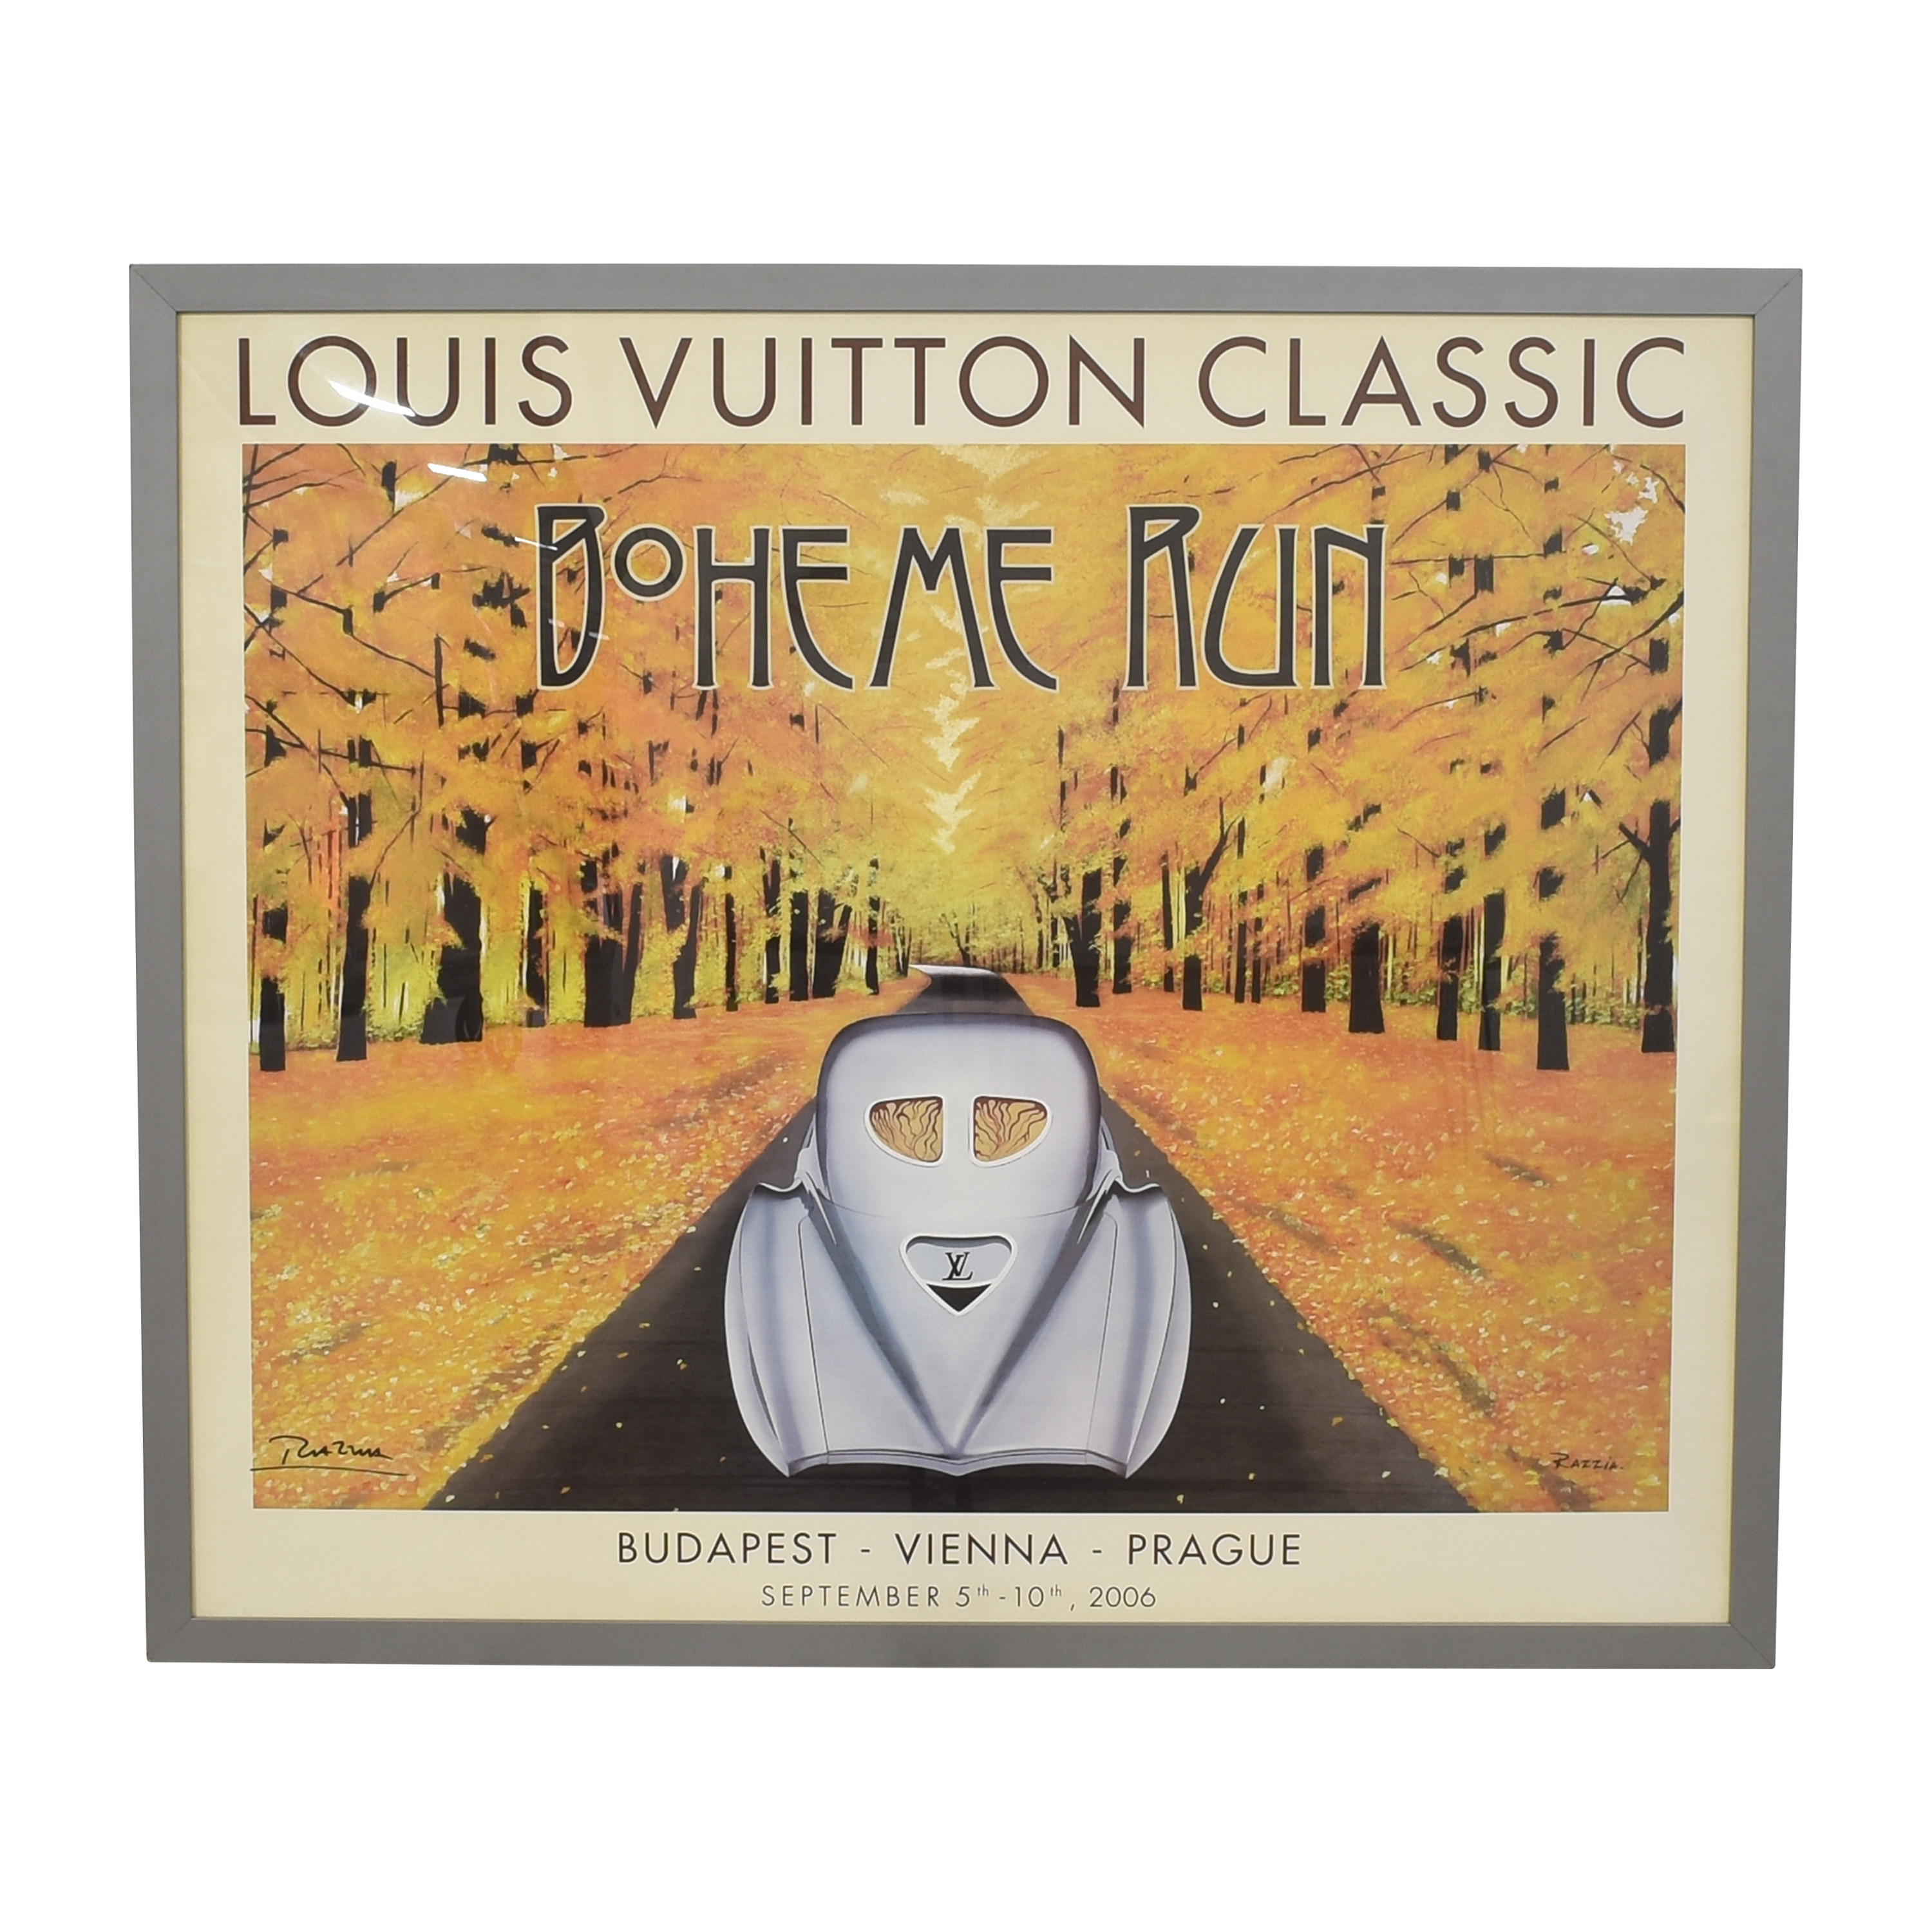 Concours Automobiles Classiques et Louis Vuitton - Parc de Bagatelle  (medium format)